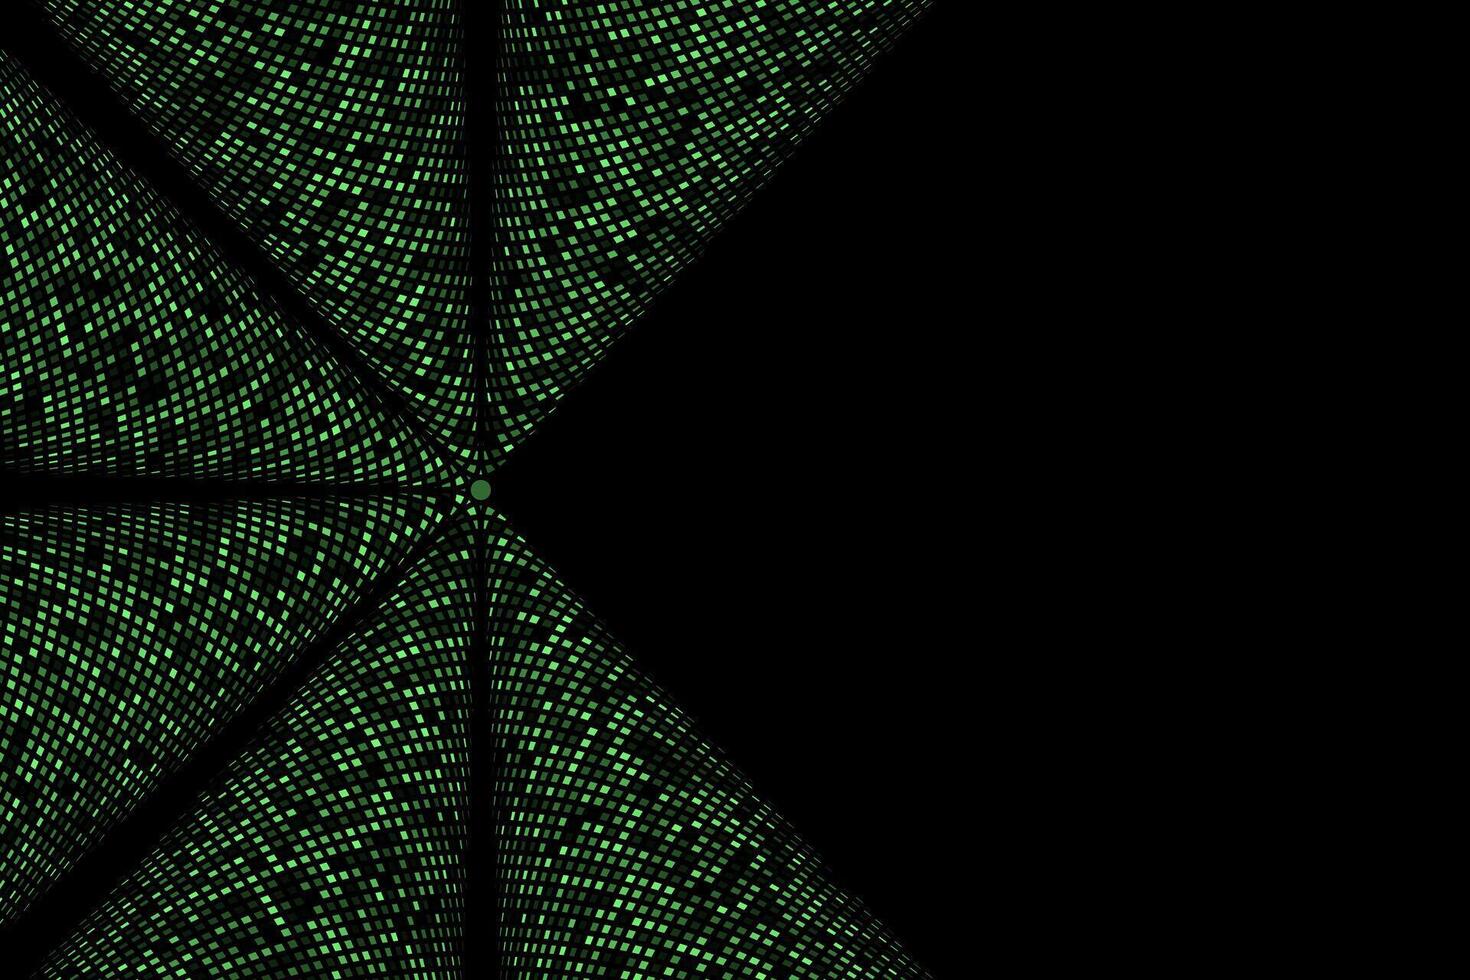 verde meio-tom abstrato Estrela papel de parede fundo vetor